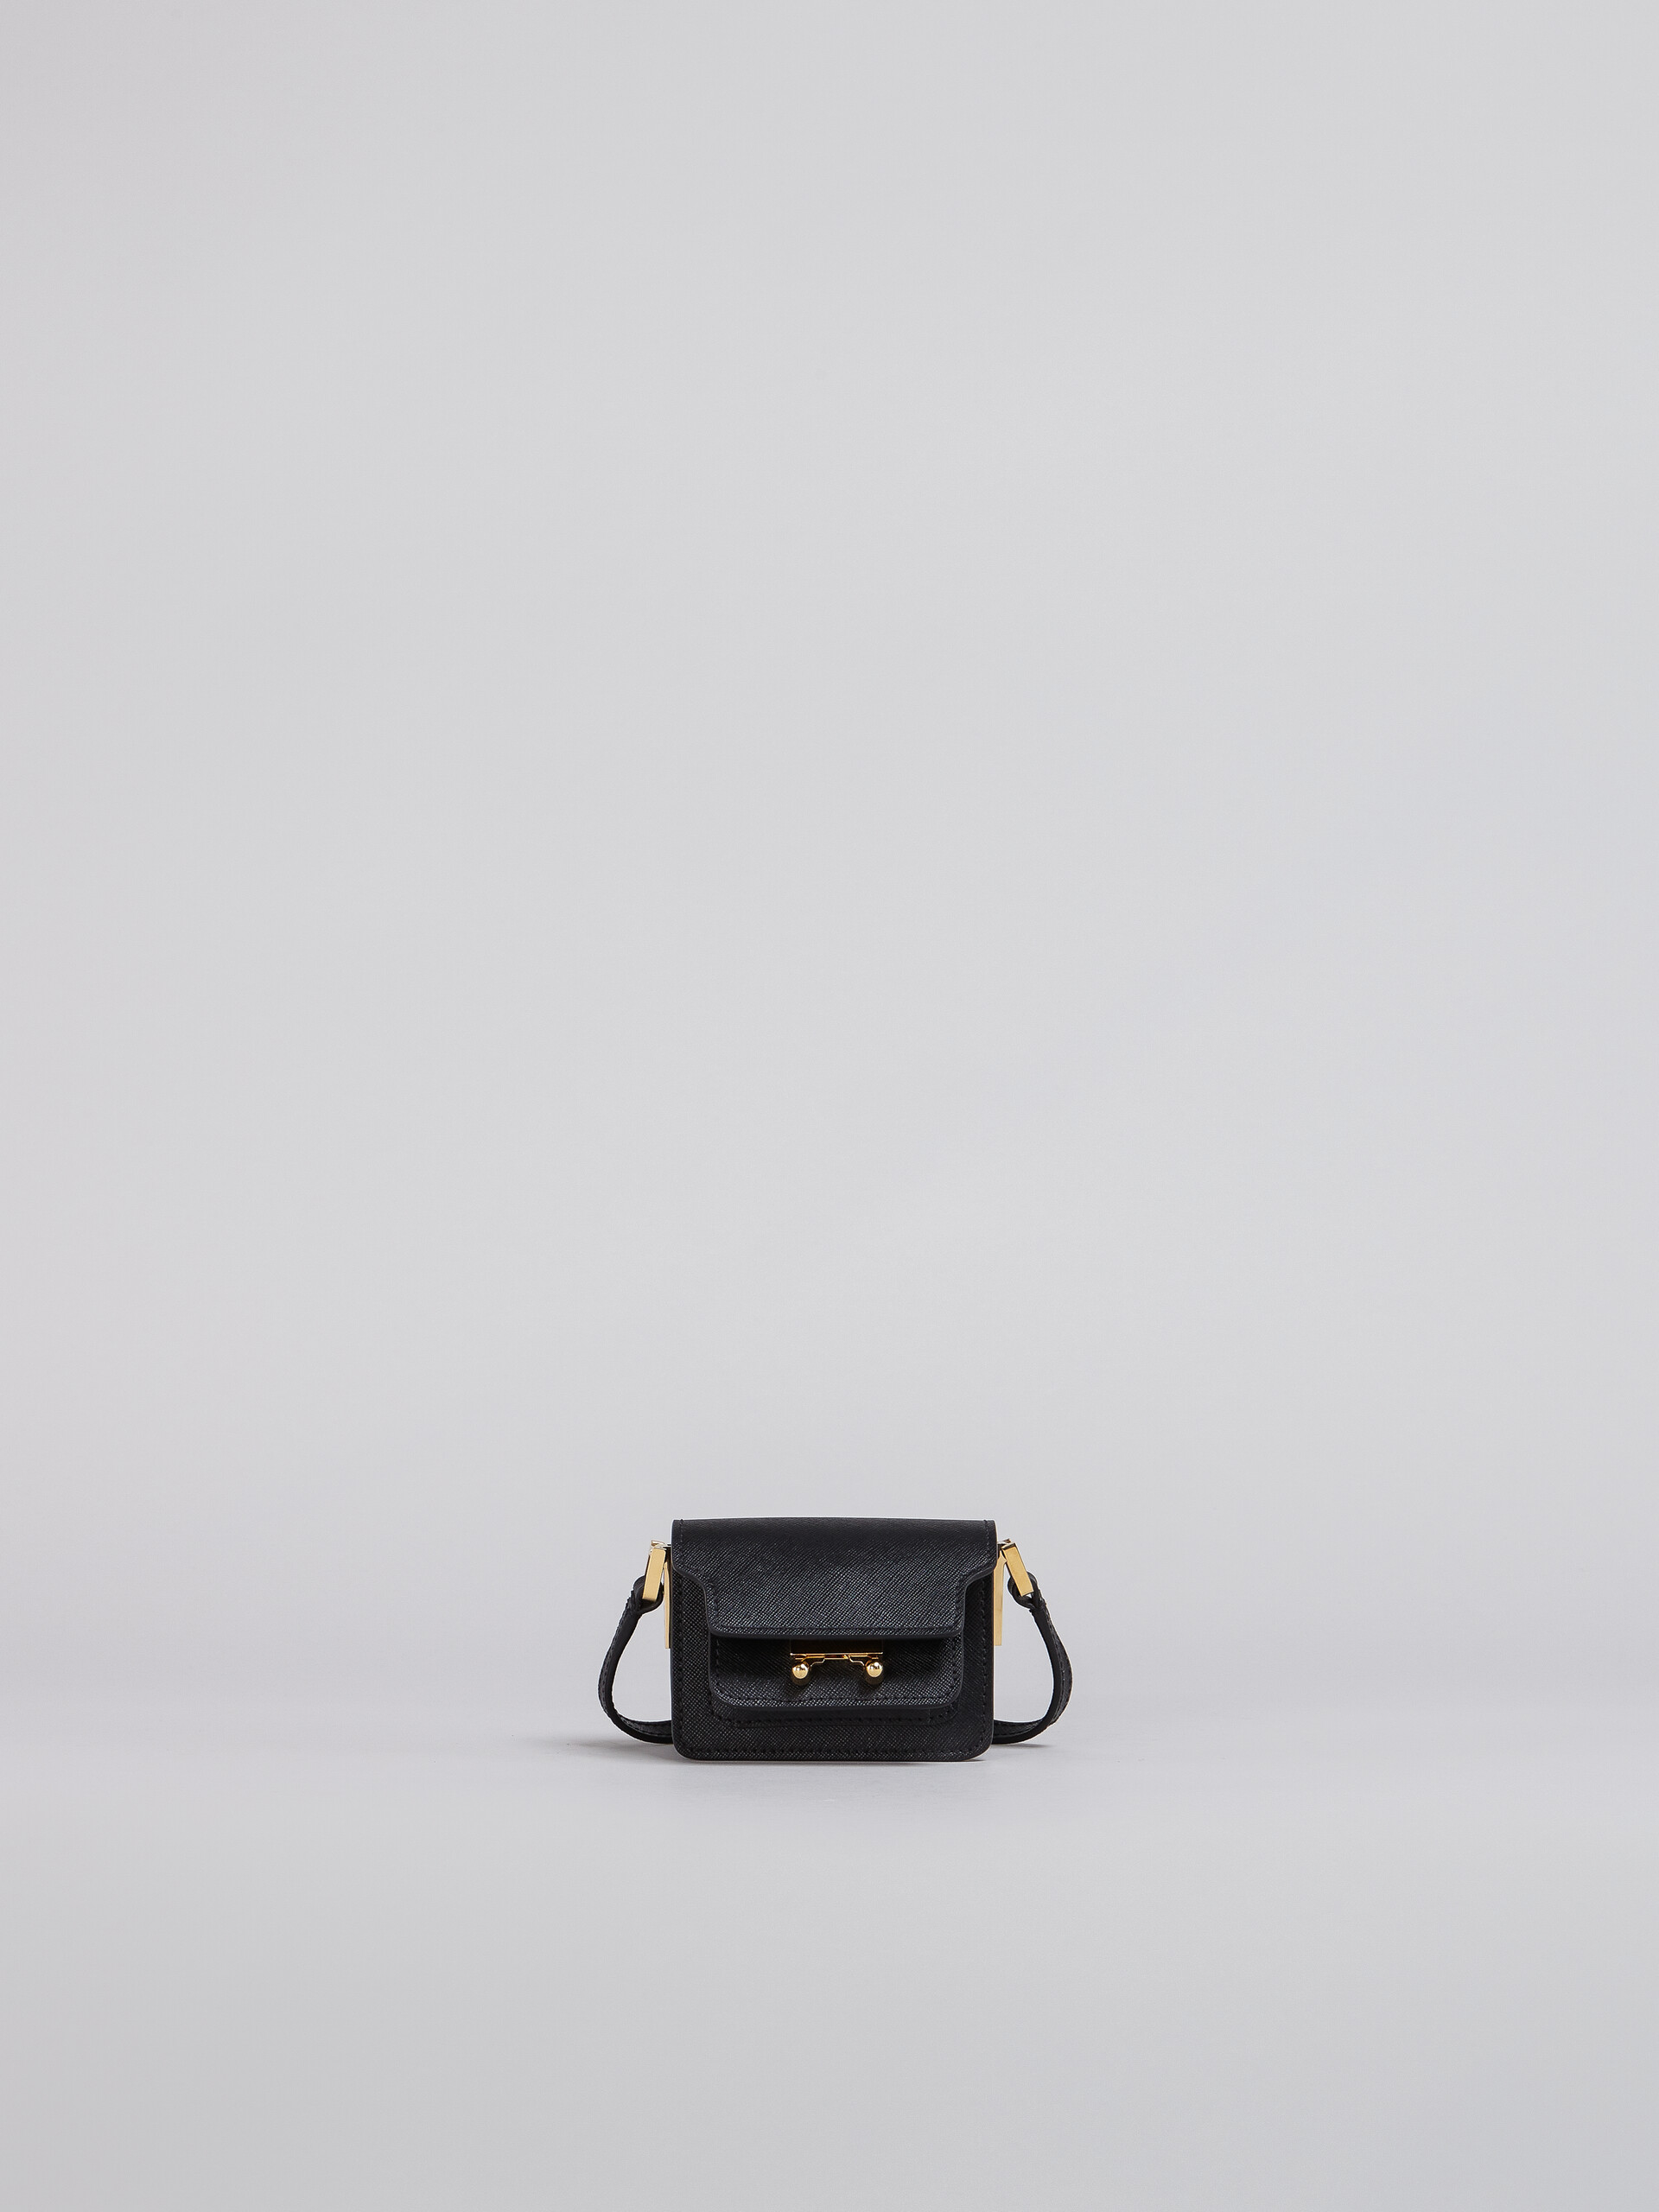 TRUNK bag nano in saffiano nero - Borse a spalla - Image 1